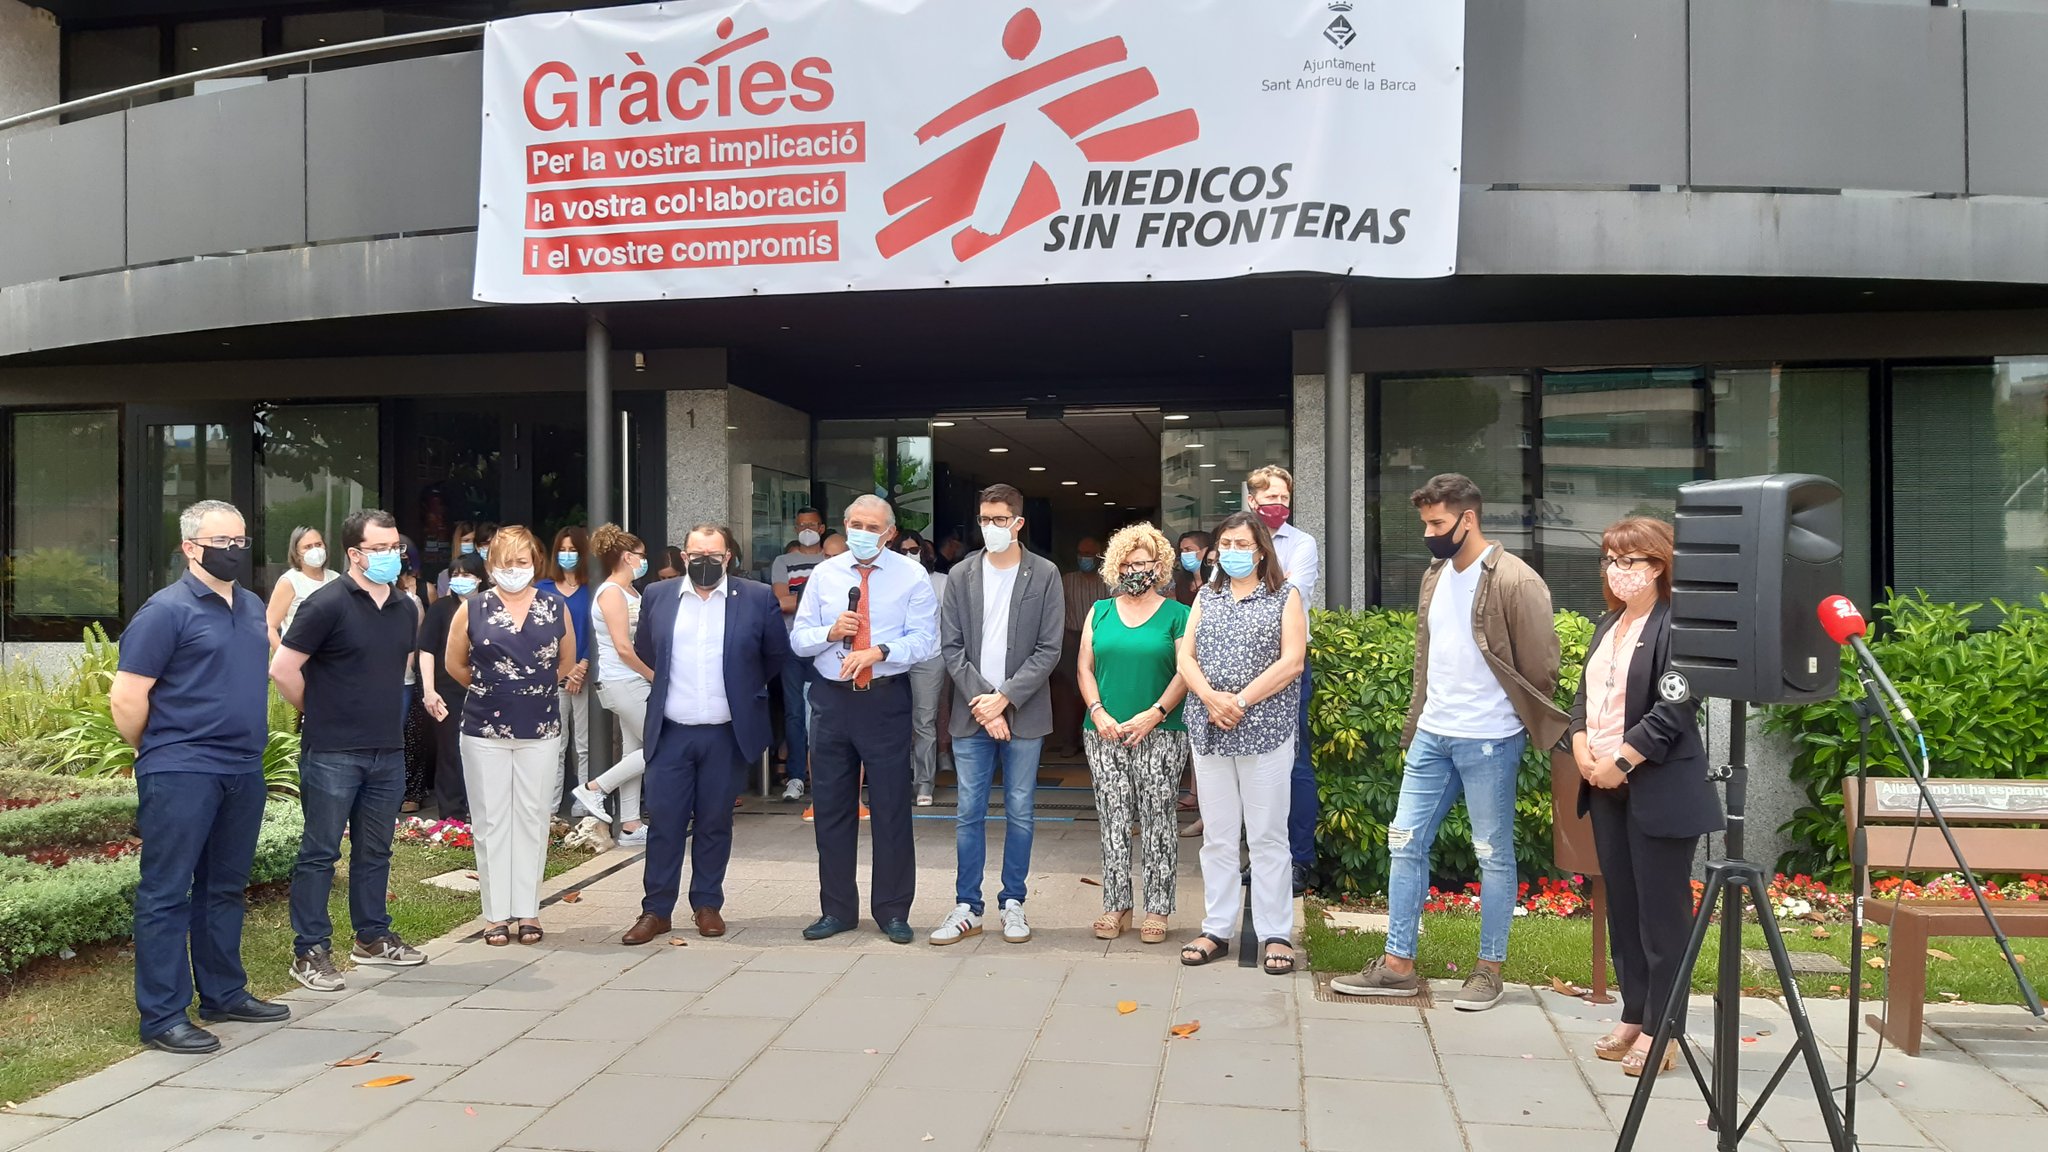 L’Ajuntament mostra el seu condol per l’assassinat masclista de dues nenes a Tenerife i una jove a Sevilla